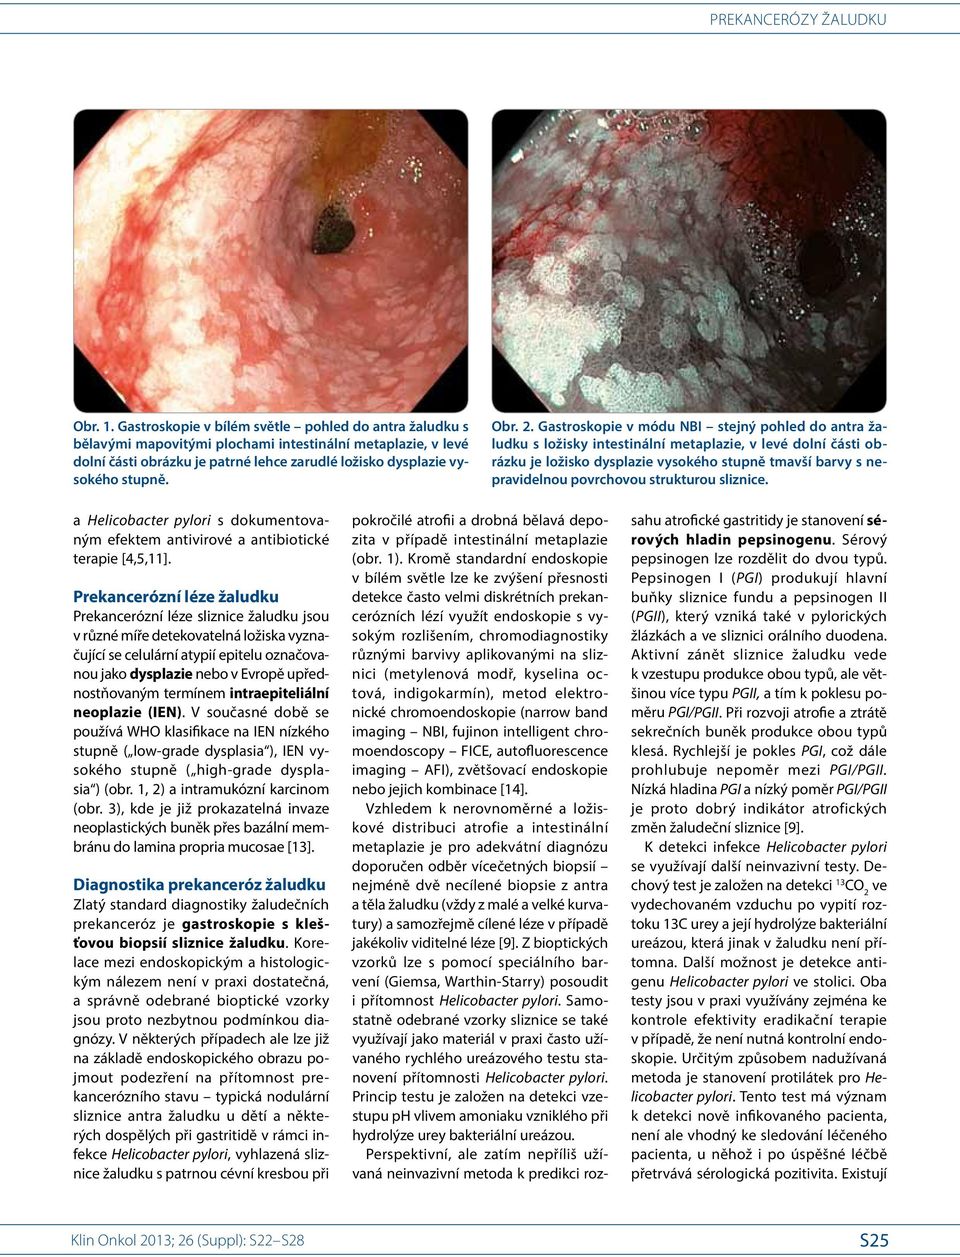 2. Gastroskopie v módu NBI stejný pohled do antra žaludku s ložisky intestinální metaplazie, v levé dolní části obrázku je ložisko dysplazie vysokého stupně tmavší barvy s nepravidelnou povrchovou